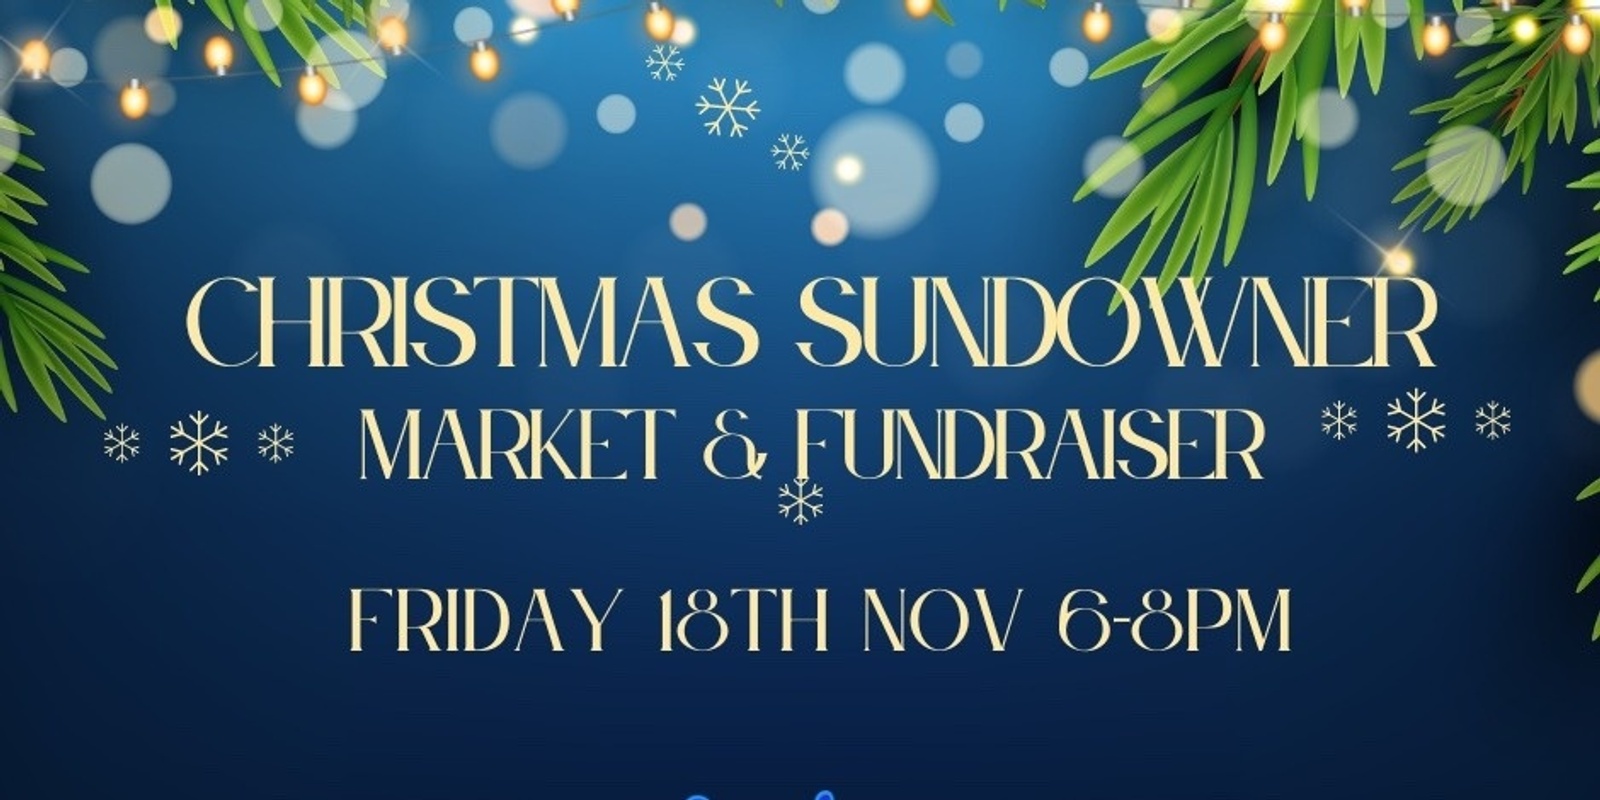 Banner image for Christmas Sundowner Market & Fundraiser